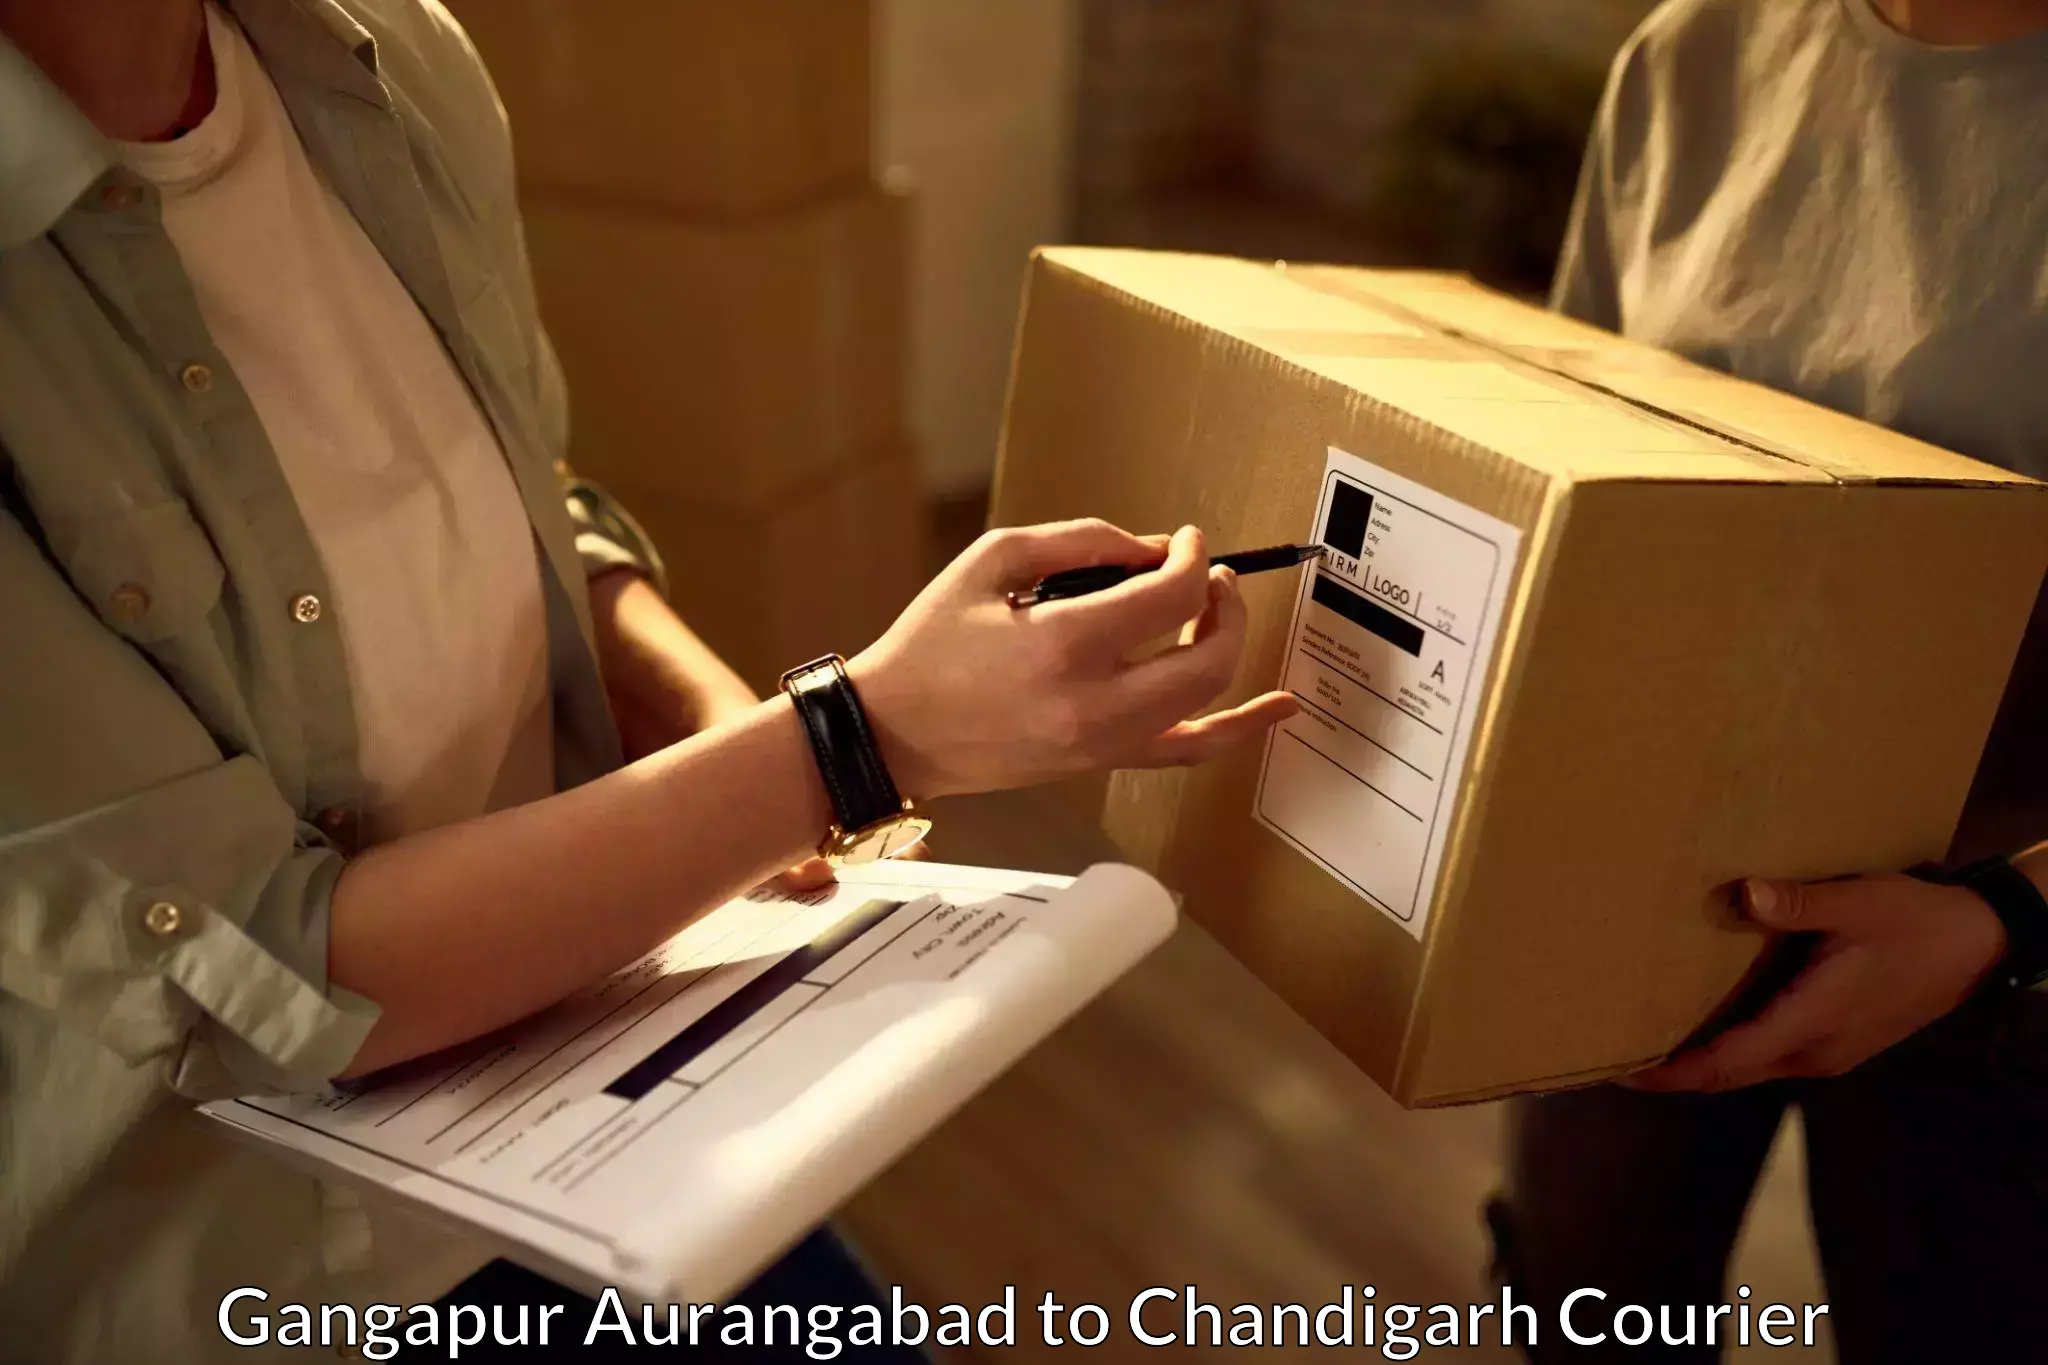 Business shipping needs Gangapur Aurangabad to Chandigarh